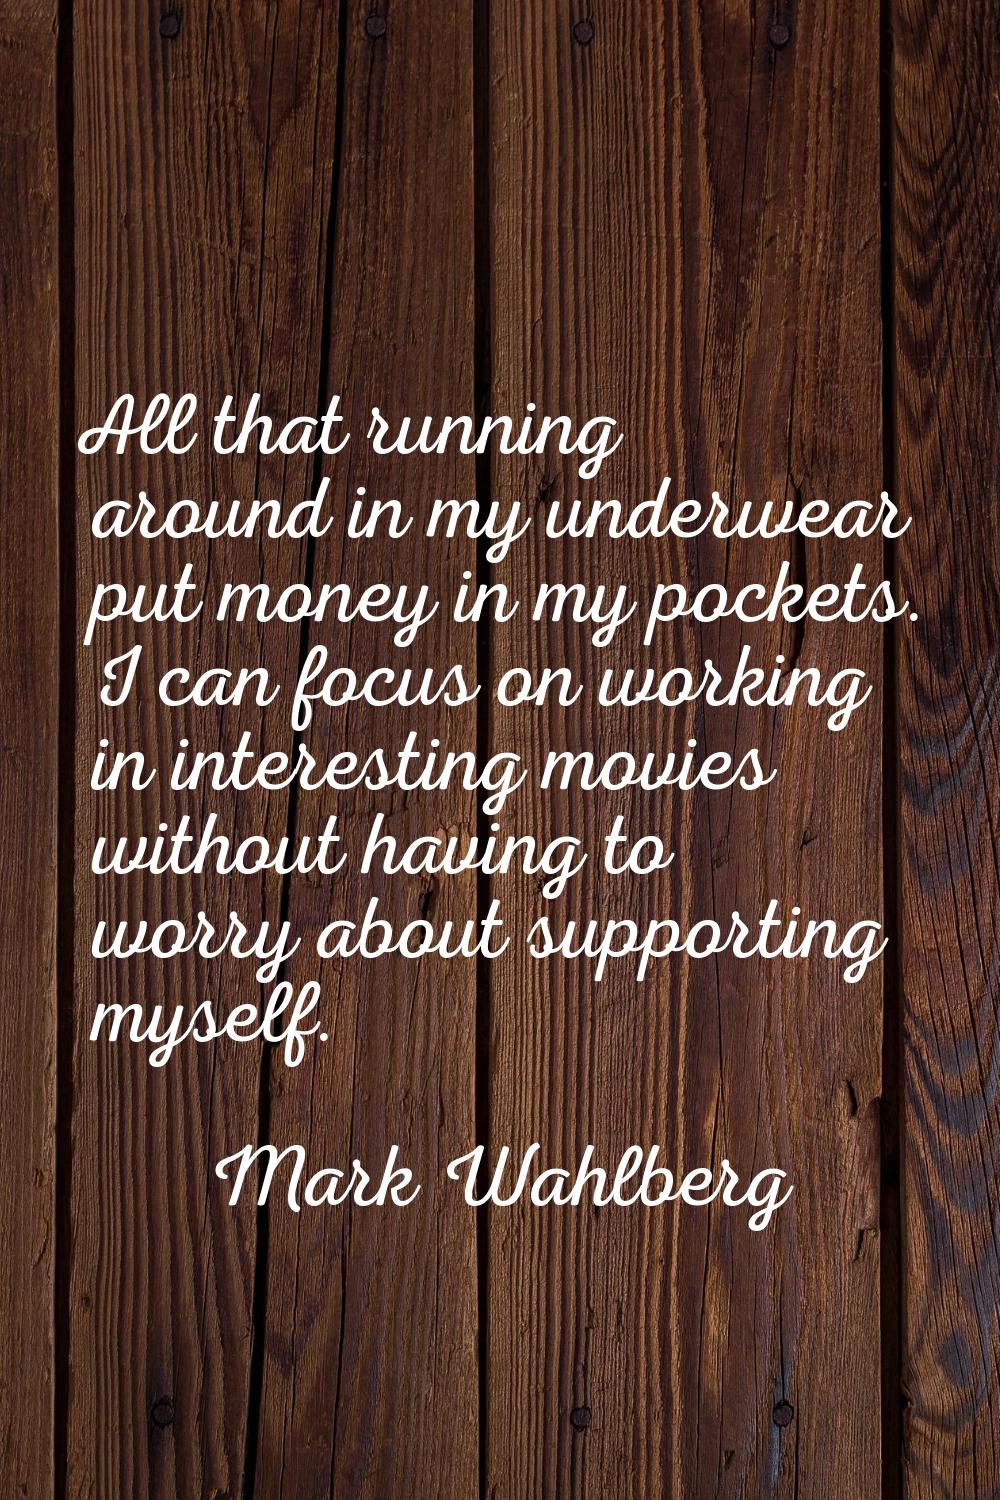 All that running around in my underwear put money in my pockets. I can focus on working in interest